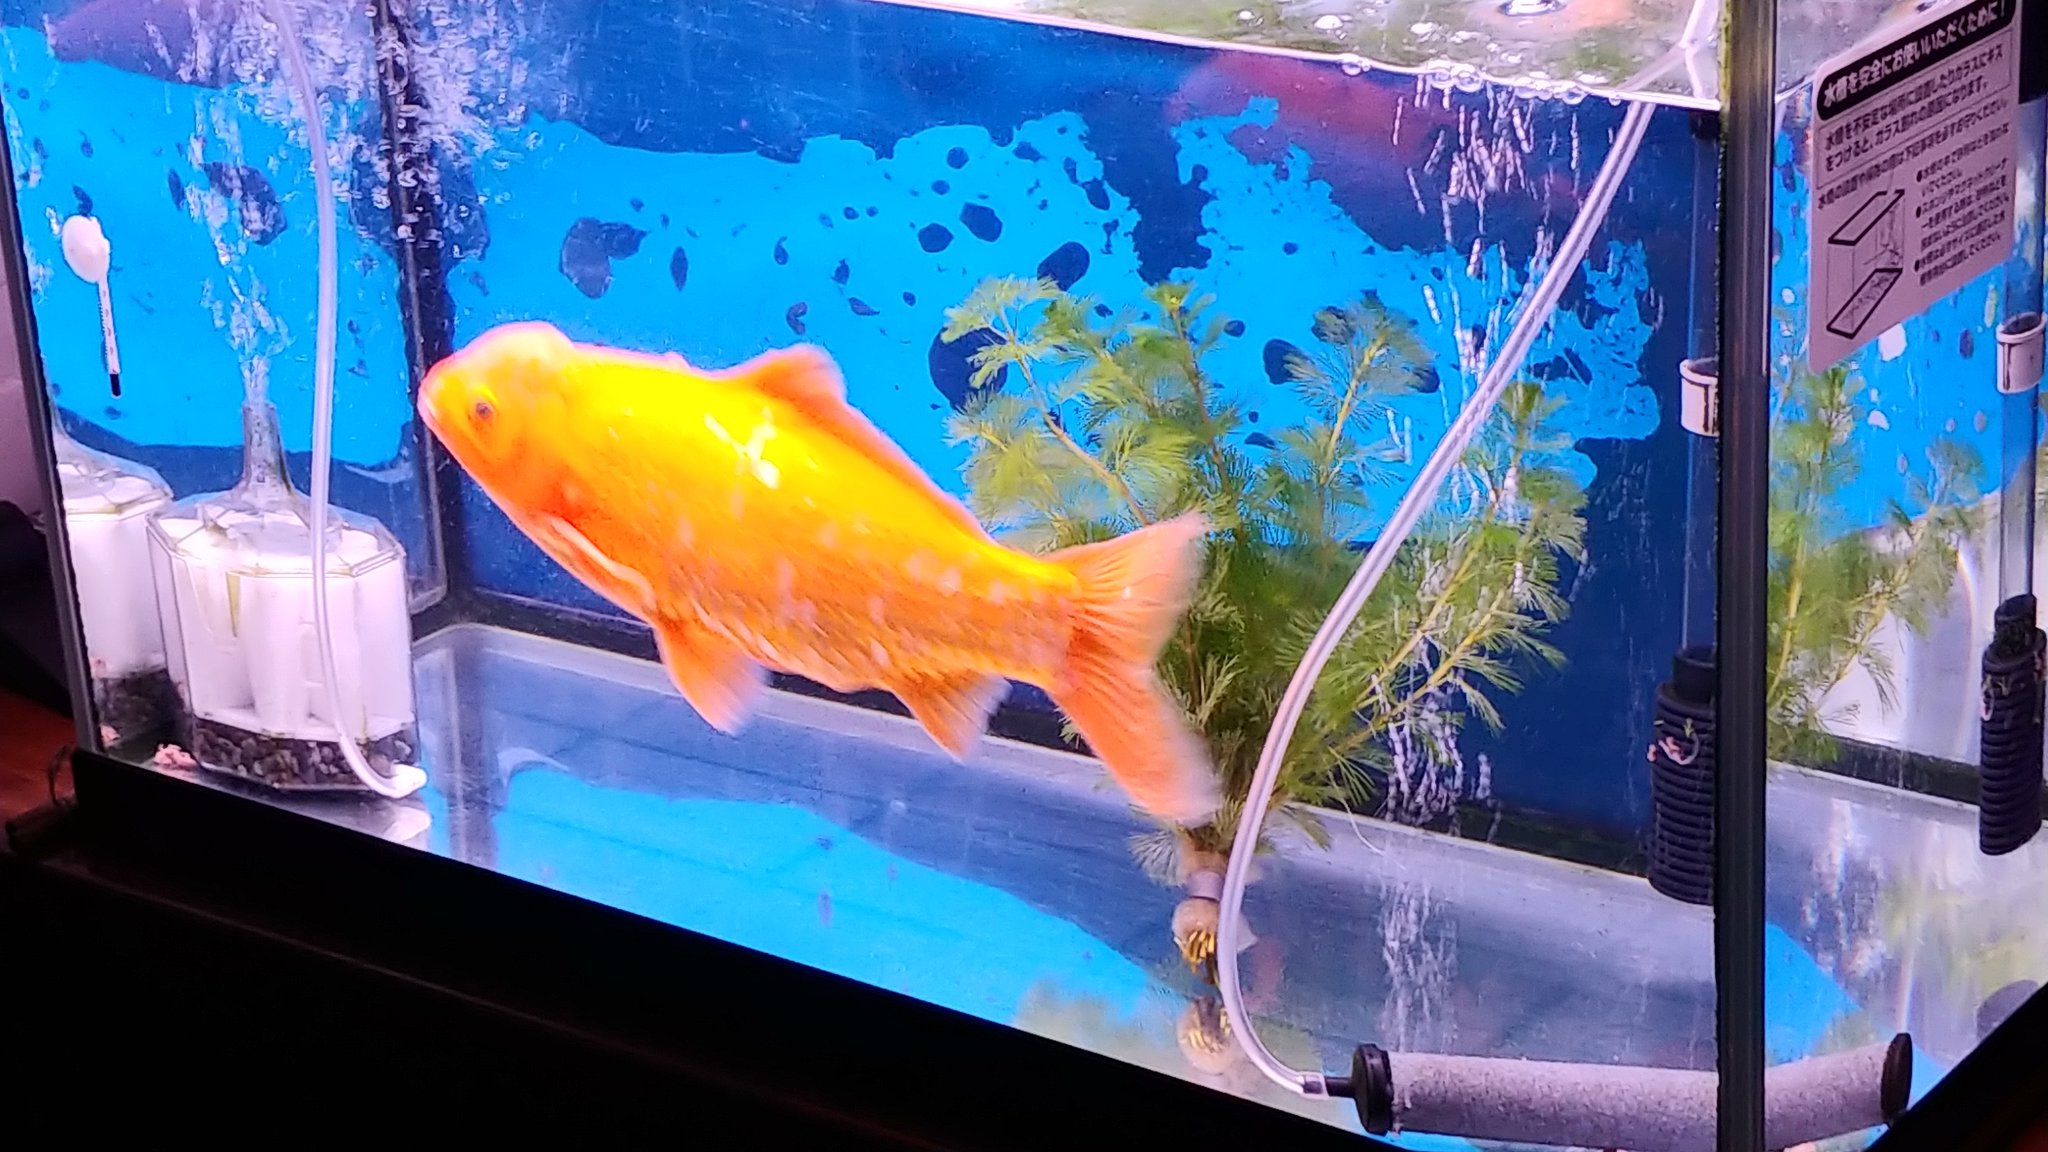 I M K どうでもいい報告をする 家で５年くらい飼ってる金魚 最初は縁日の金魚 すくいサイズが6匹程いたんだけど今では1匹だけになり めっちゃ大きくなってます T Co Hvamxbgz42 Twitter